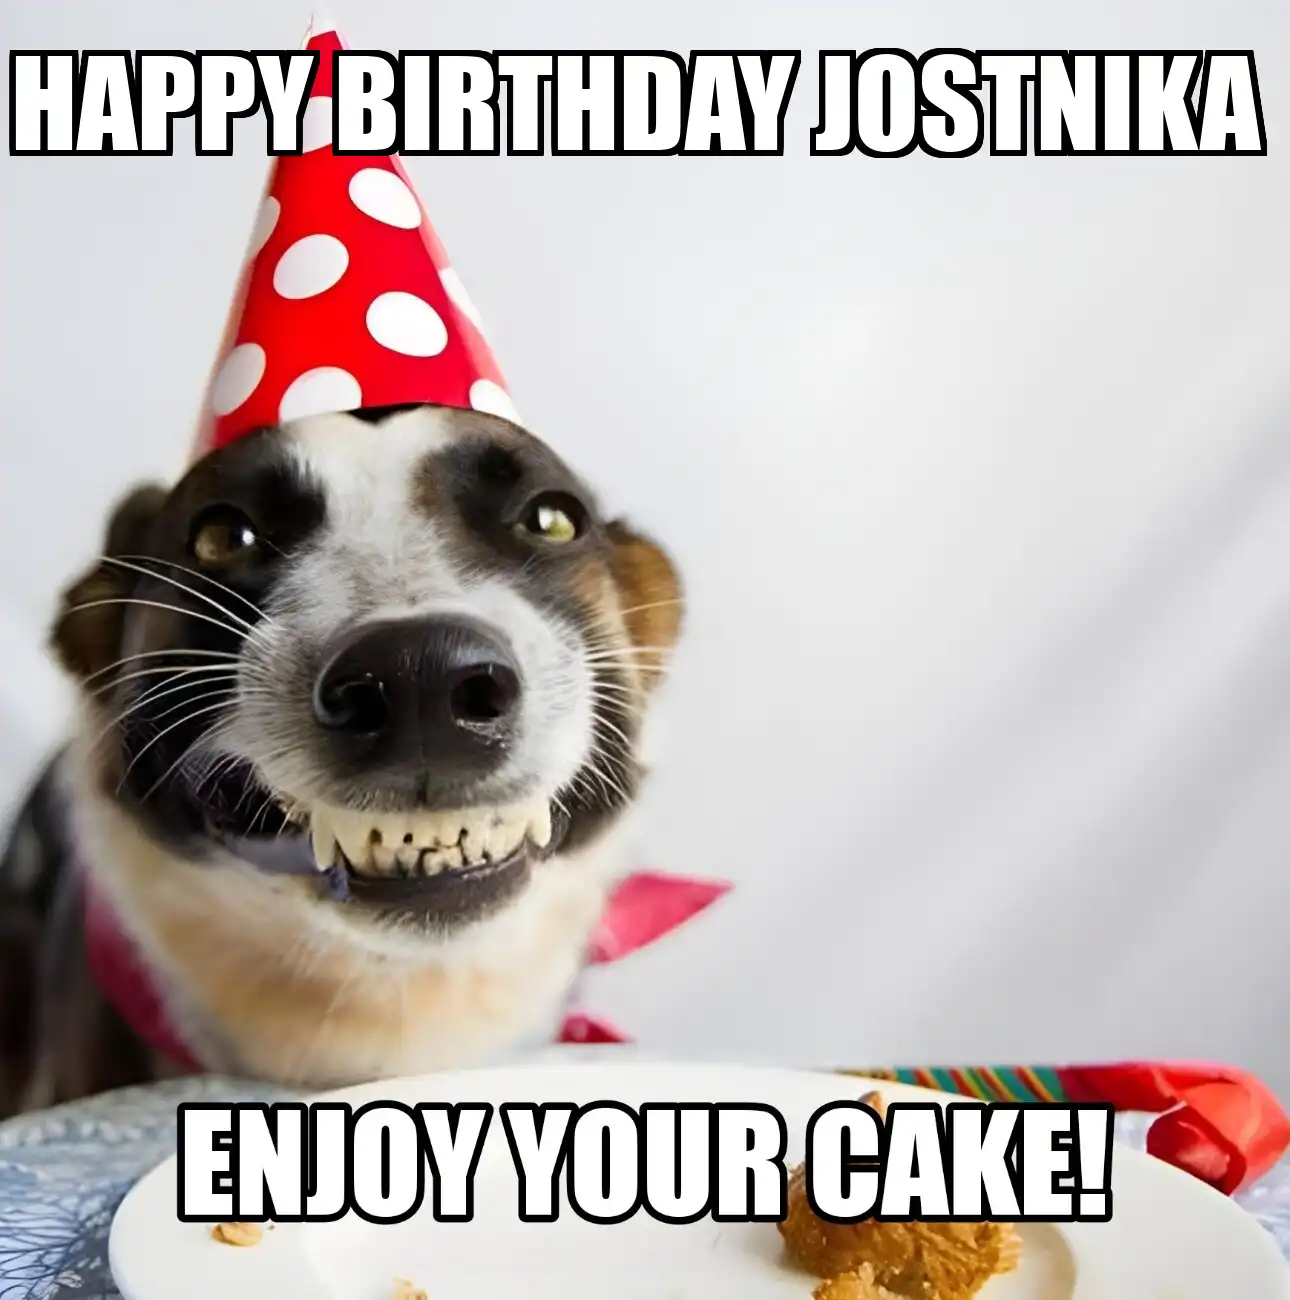 Happy Birthday Jostnika Enjoy Your Cake Dog Meme